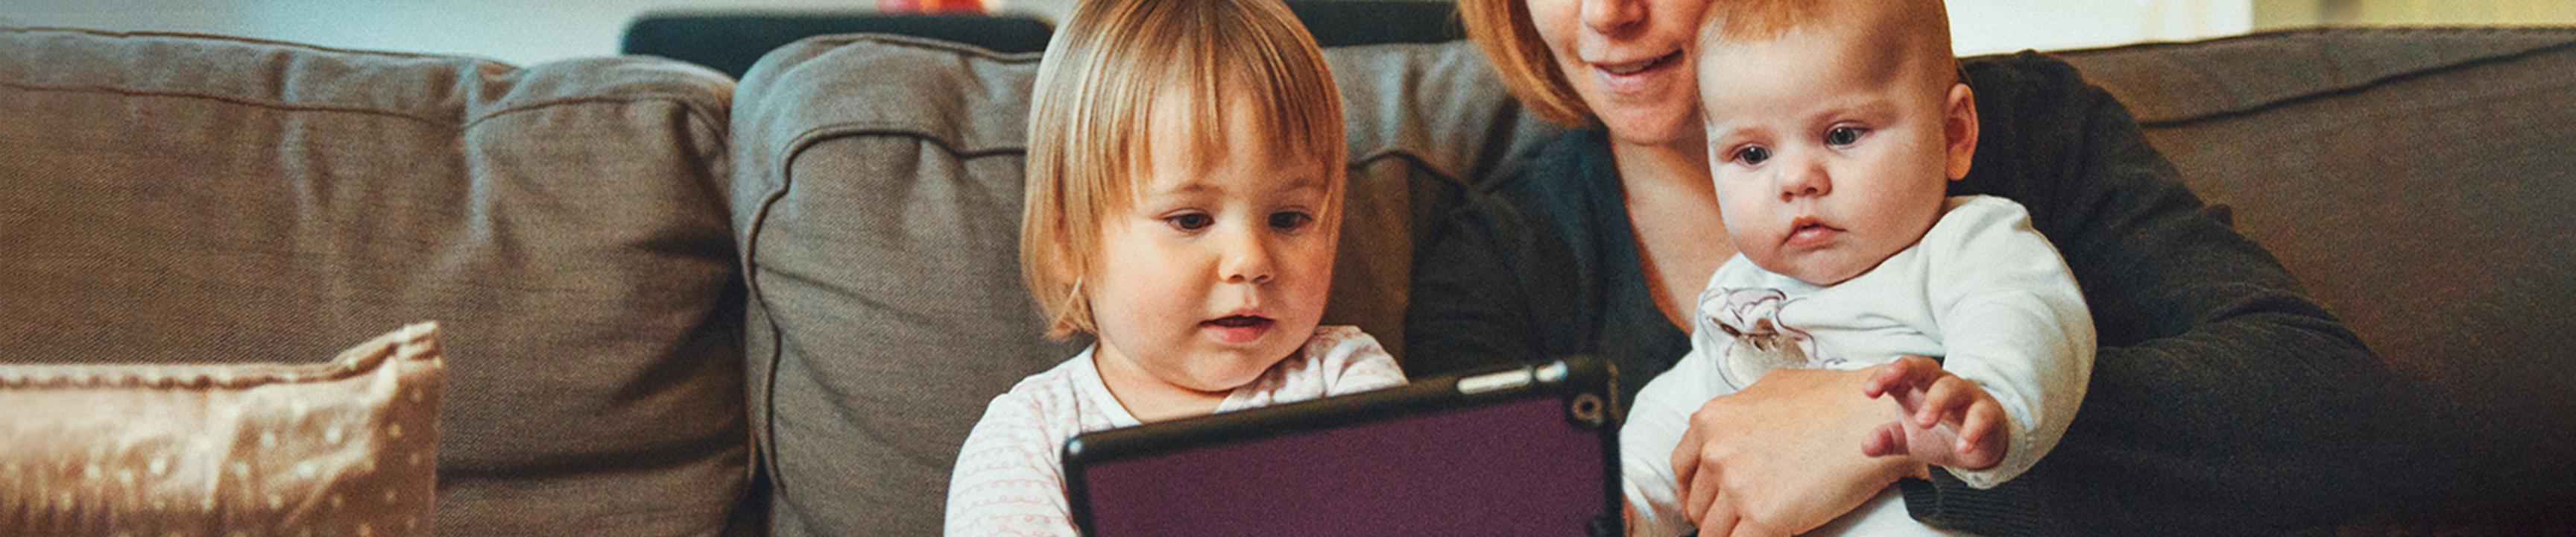 bebé y niño pequeño mirando un dispositivo de tableta